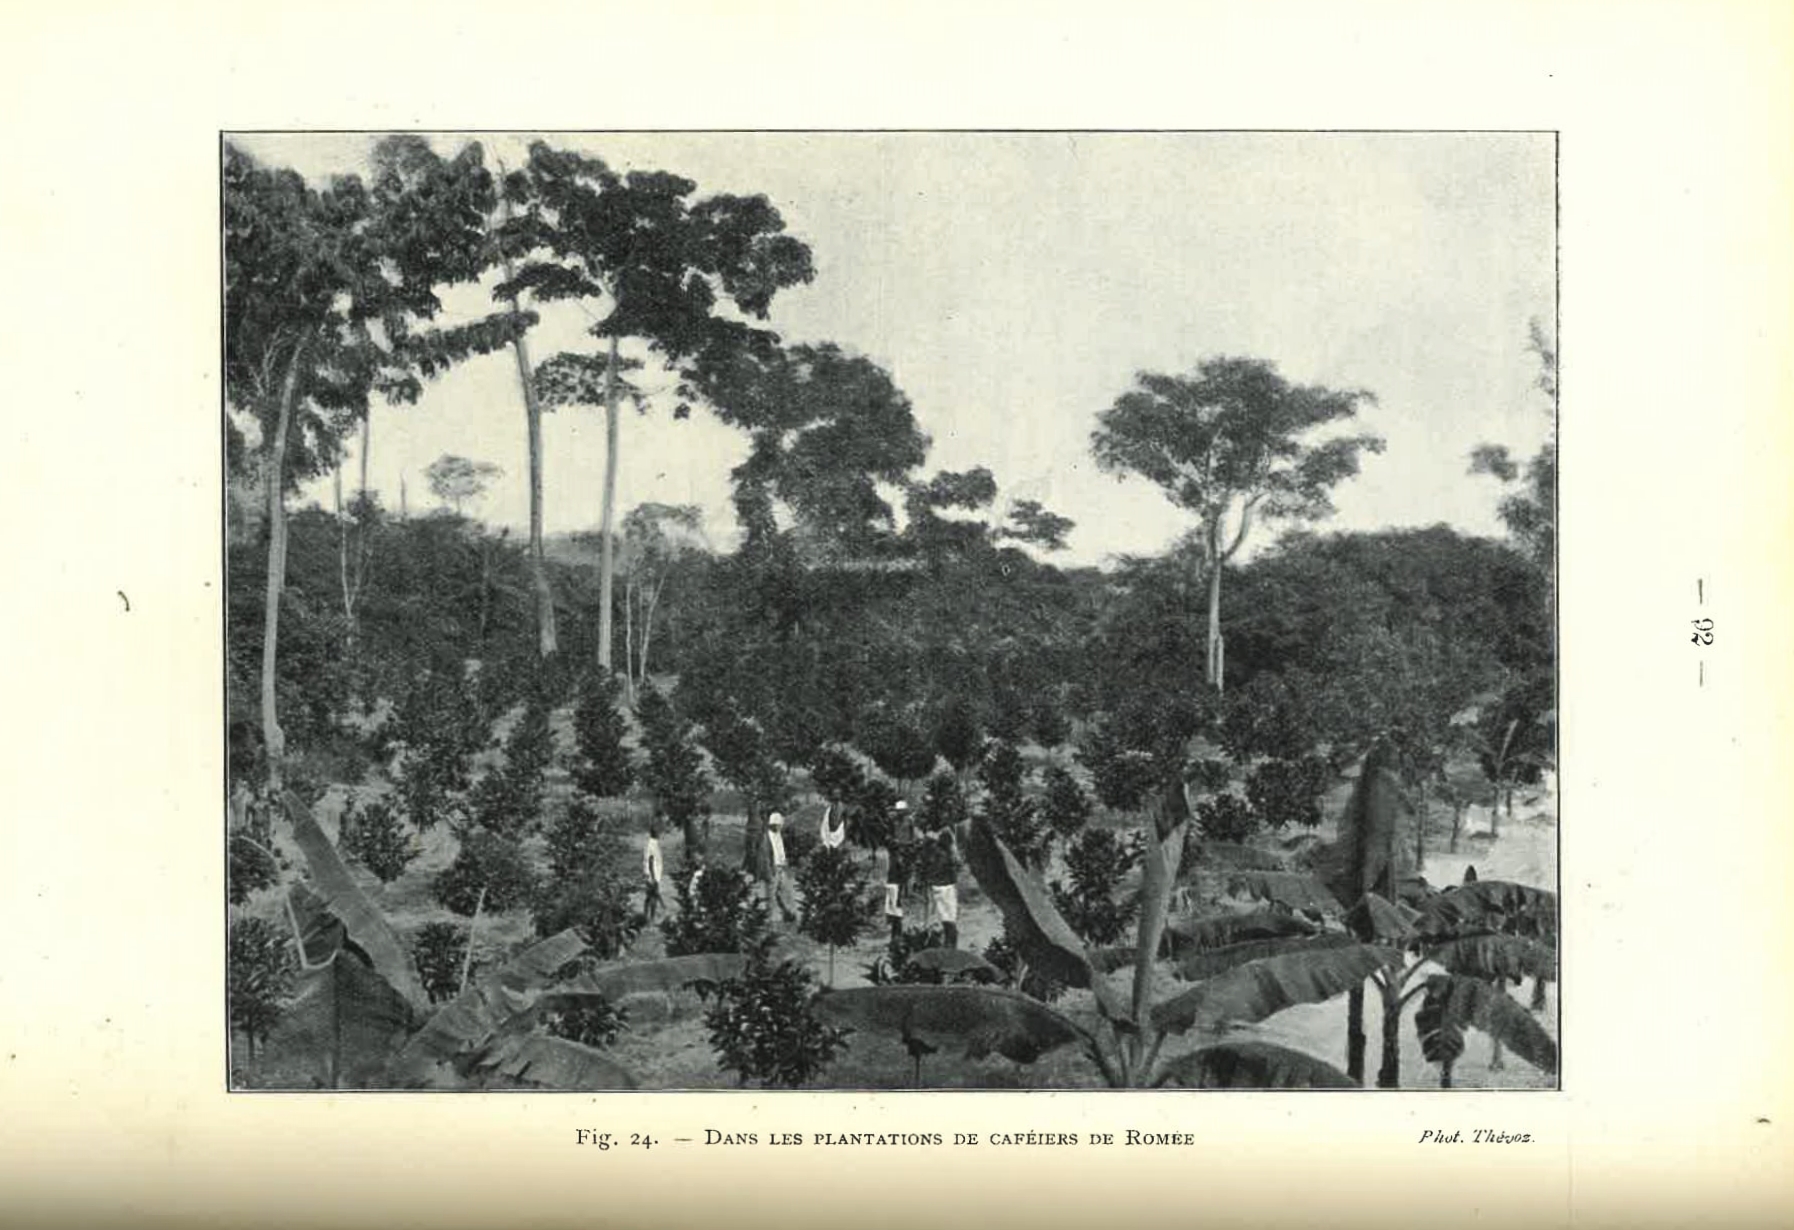  Les Plantes Tropicales de Grande Culture uit 1908. Collectie Plantentuin Meise.